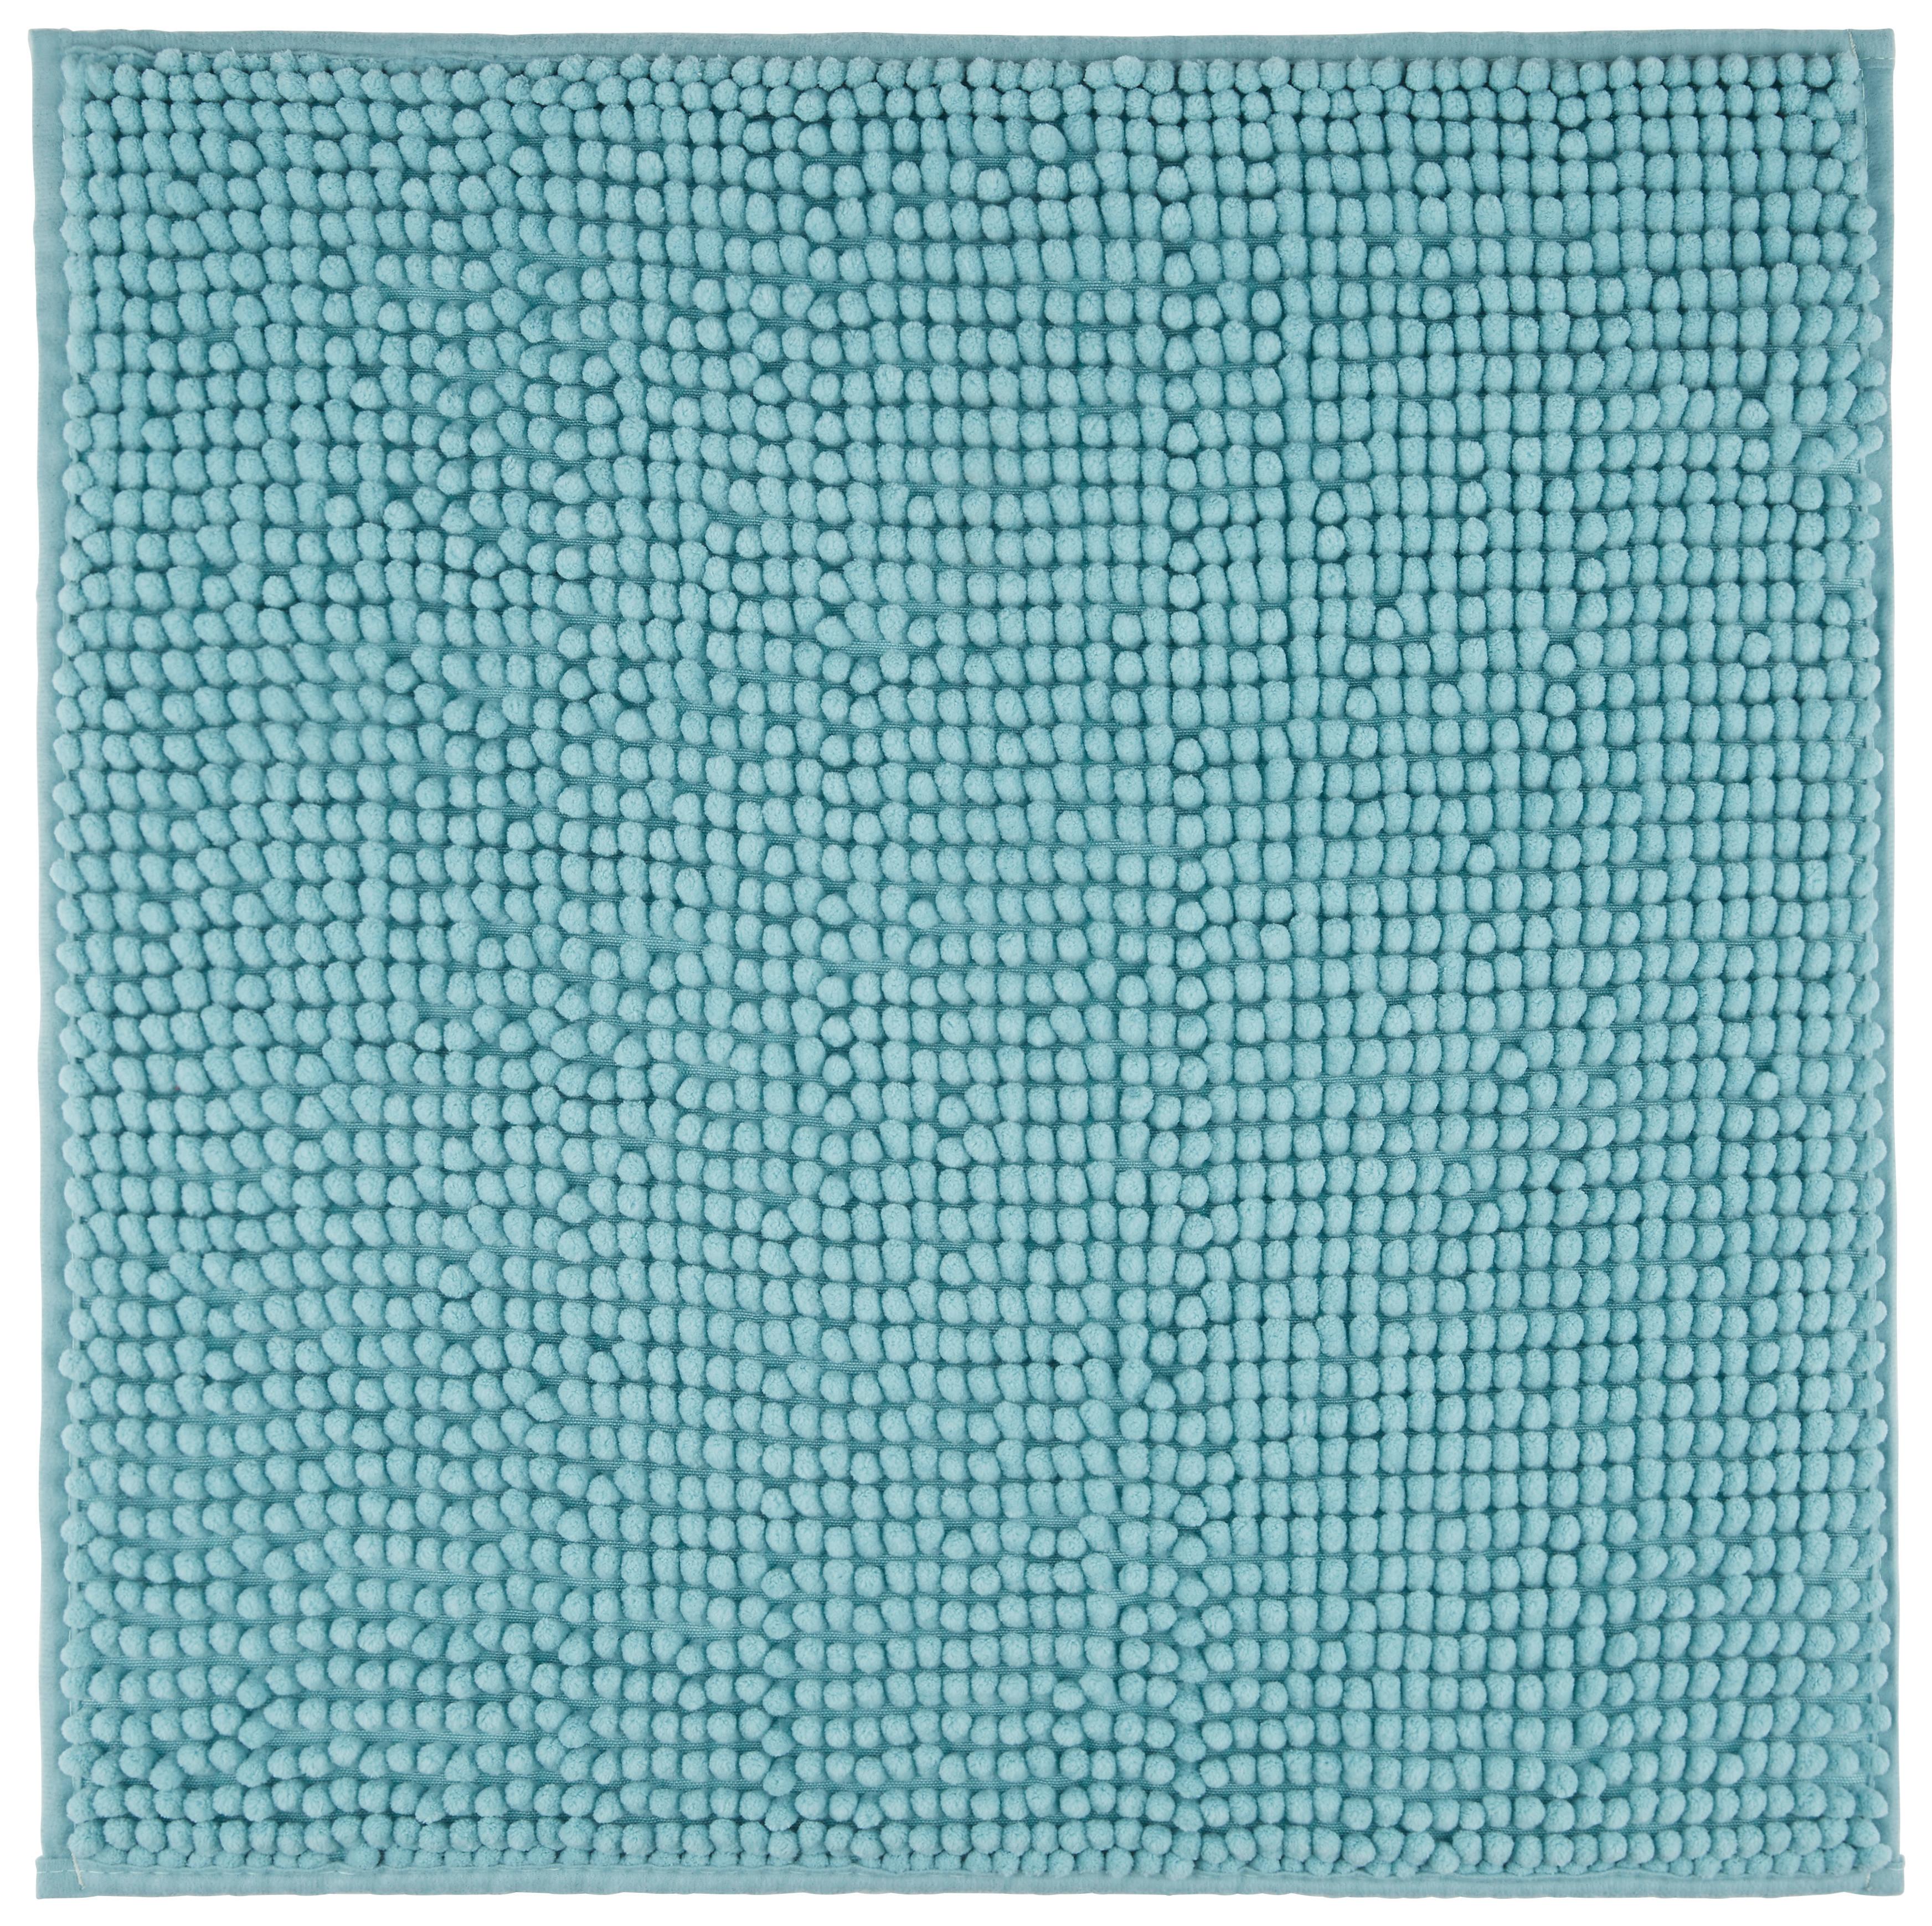 Fürdőszobaszőnyeg Nelly 50/50cm - Türkiz, Textil (50/50cm) - Modern Living